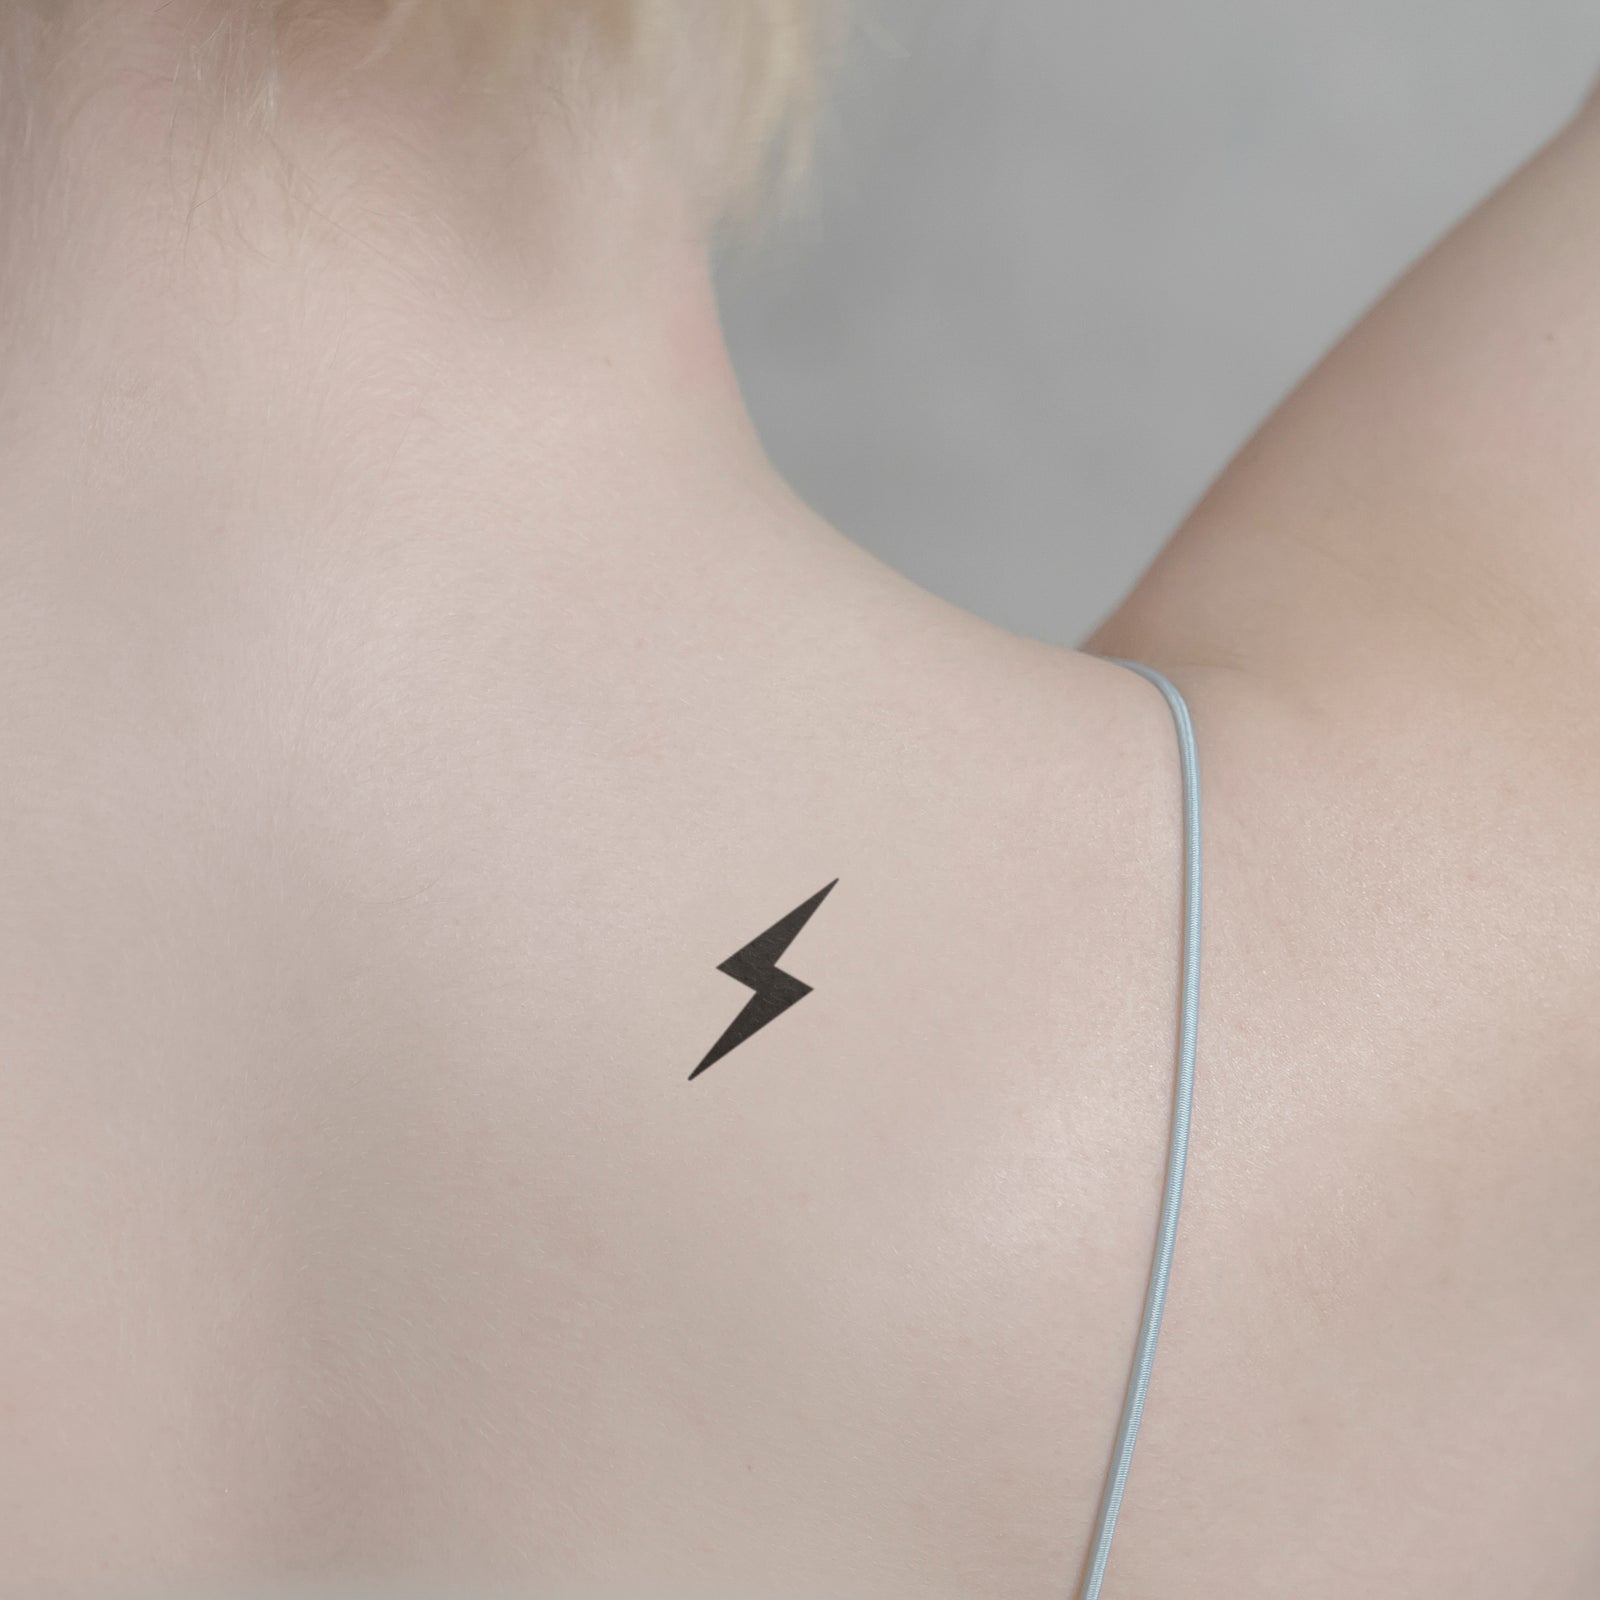 Tattoo - Lightning Bolt by TheKrystleGallery on DeviantArt